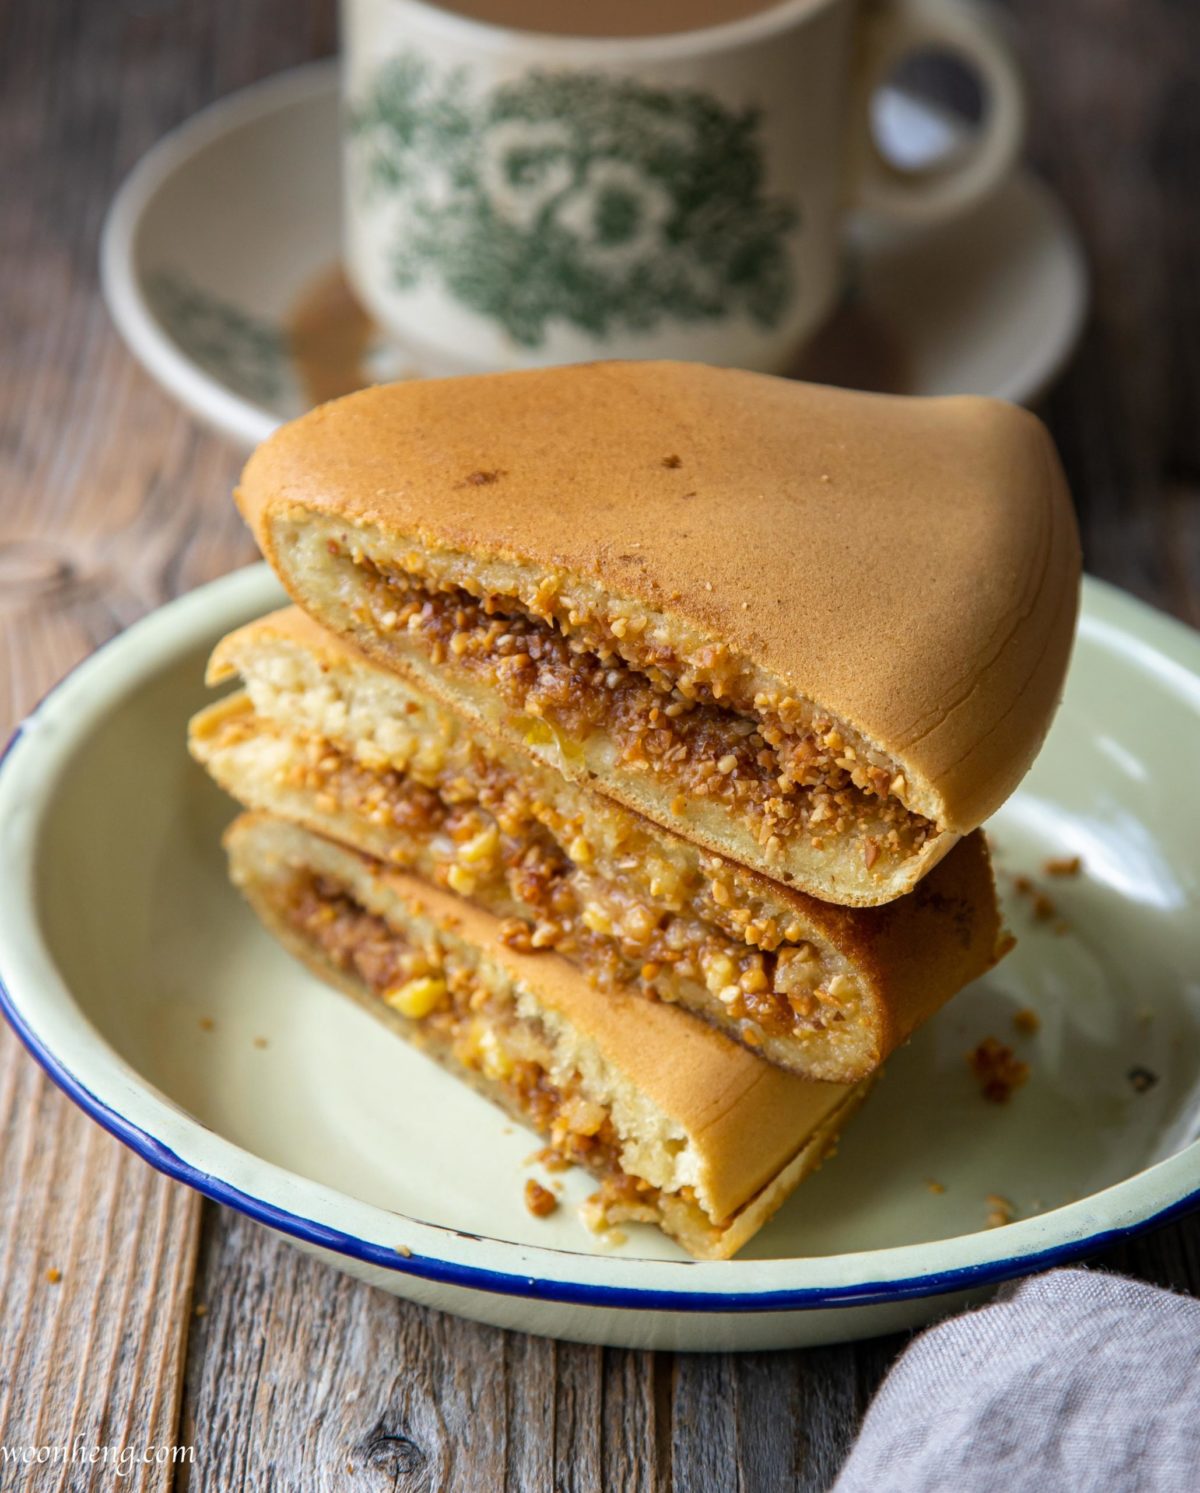 The ultimate Vegan Apam Balik (Pancake turnover) You Need - WoonHeng